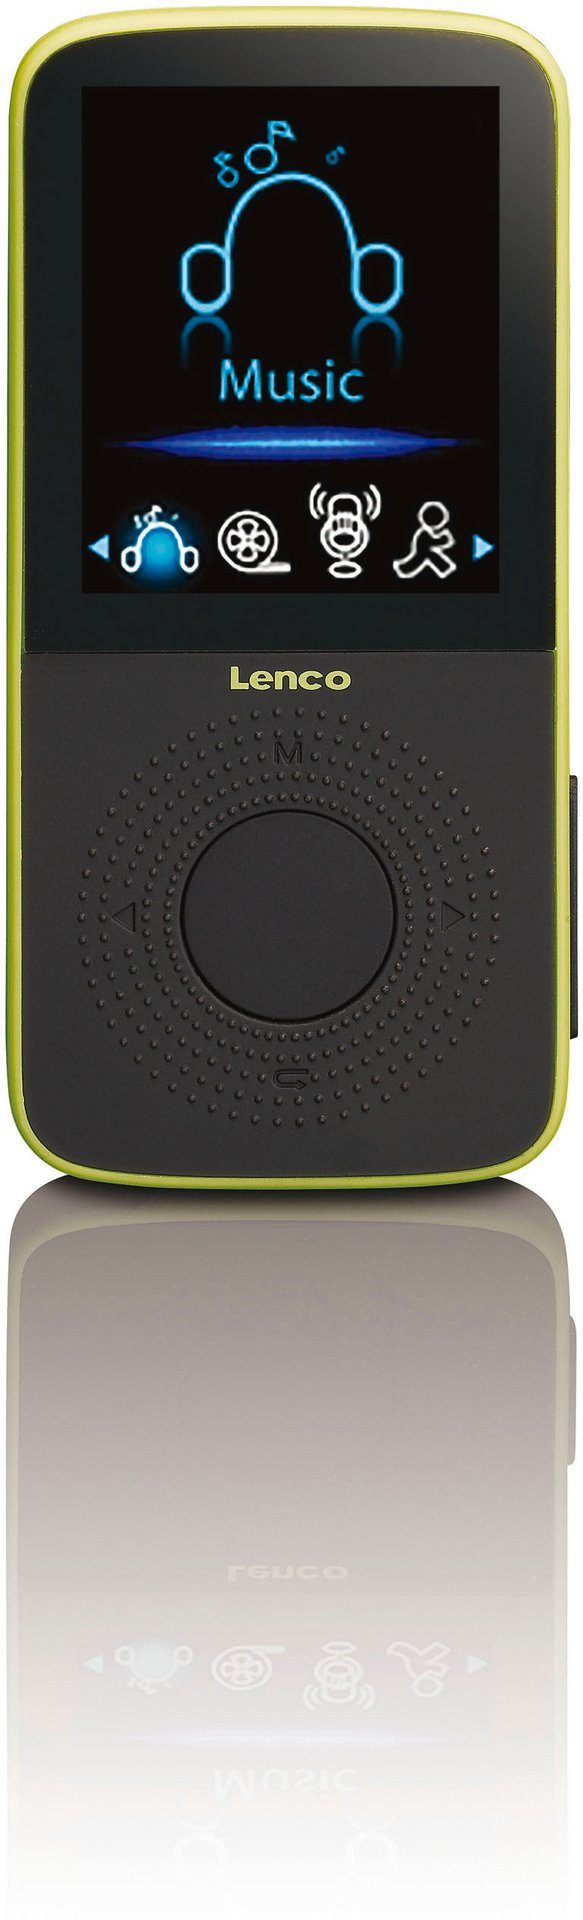 PODO-153 MP3-Player integriertem GB) (4 Schwarz/Grün mit Player Lenco MP3 Schrittzähler